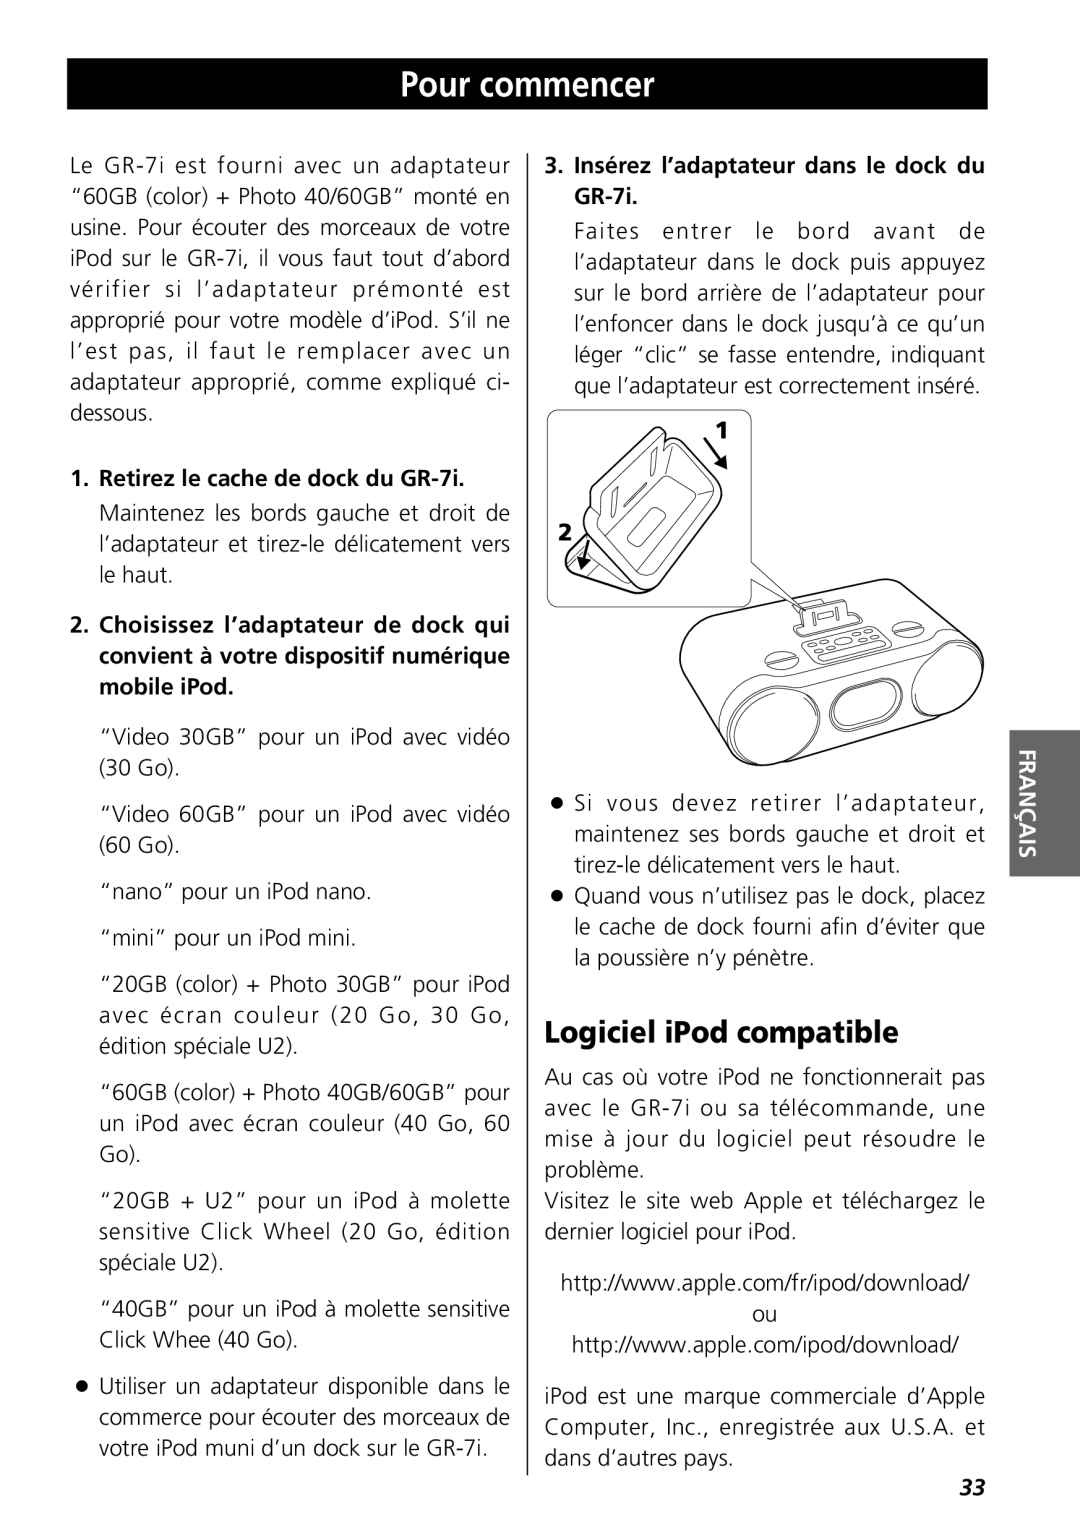 Teac GR-7i owner manual Pour commencer, Logiciel iPod compatible 